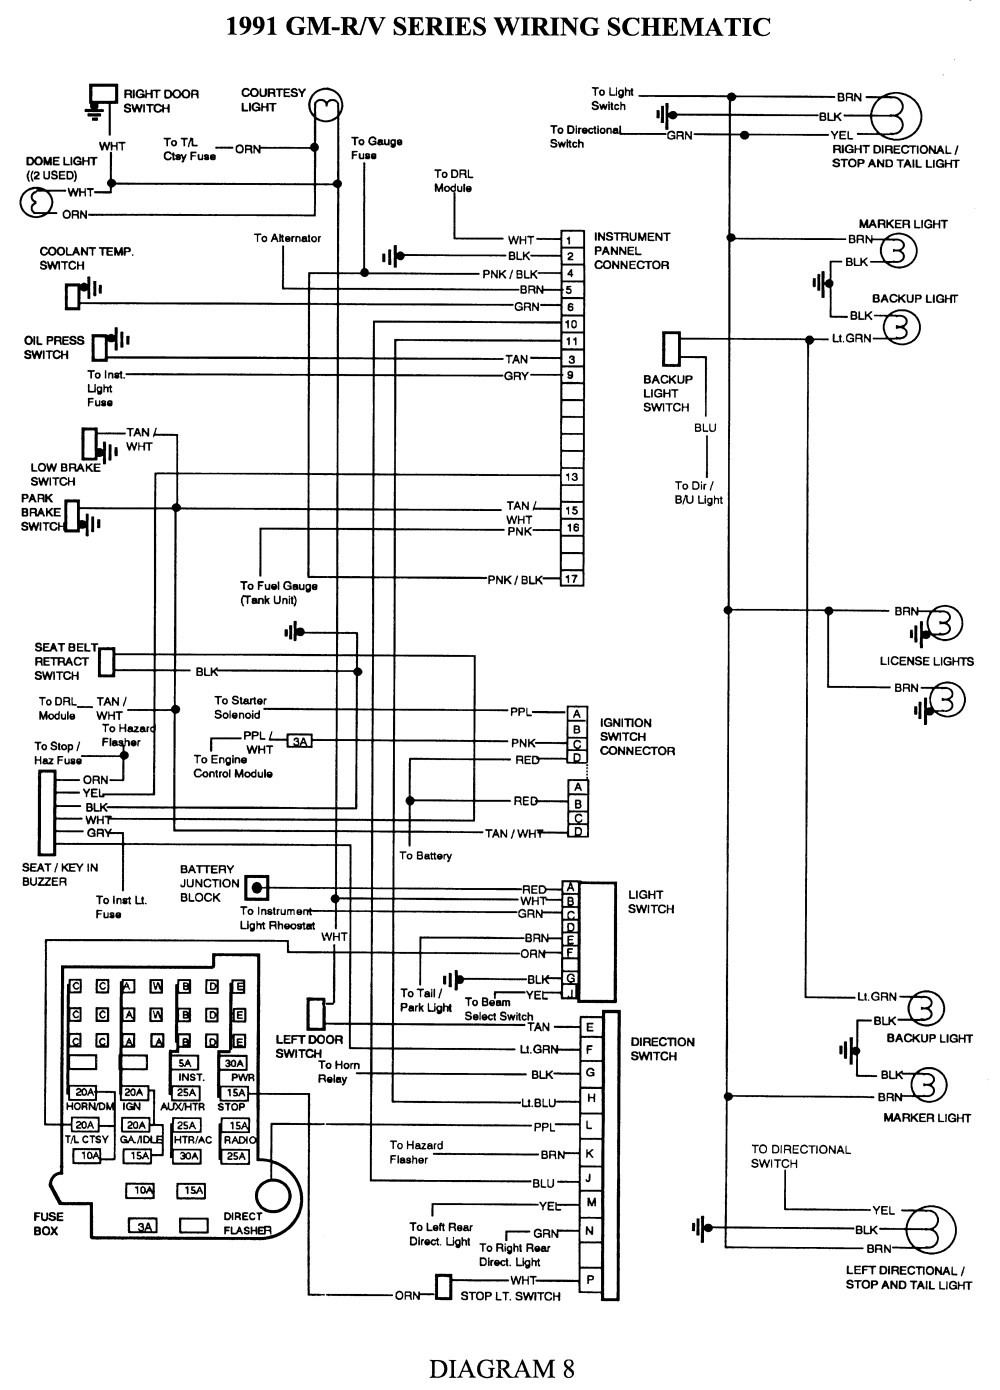 Repair Guides Wiring Diagrams Wiring Diagrams Autozone 1979 Chevy P30 Wiring Diagram Chevy P30 Wiring Diagram